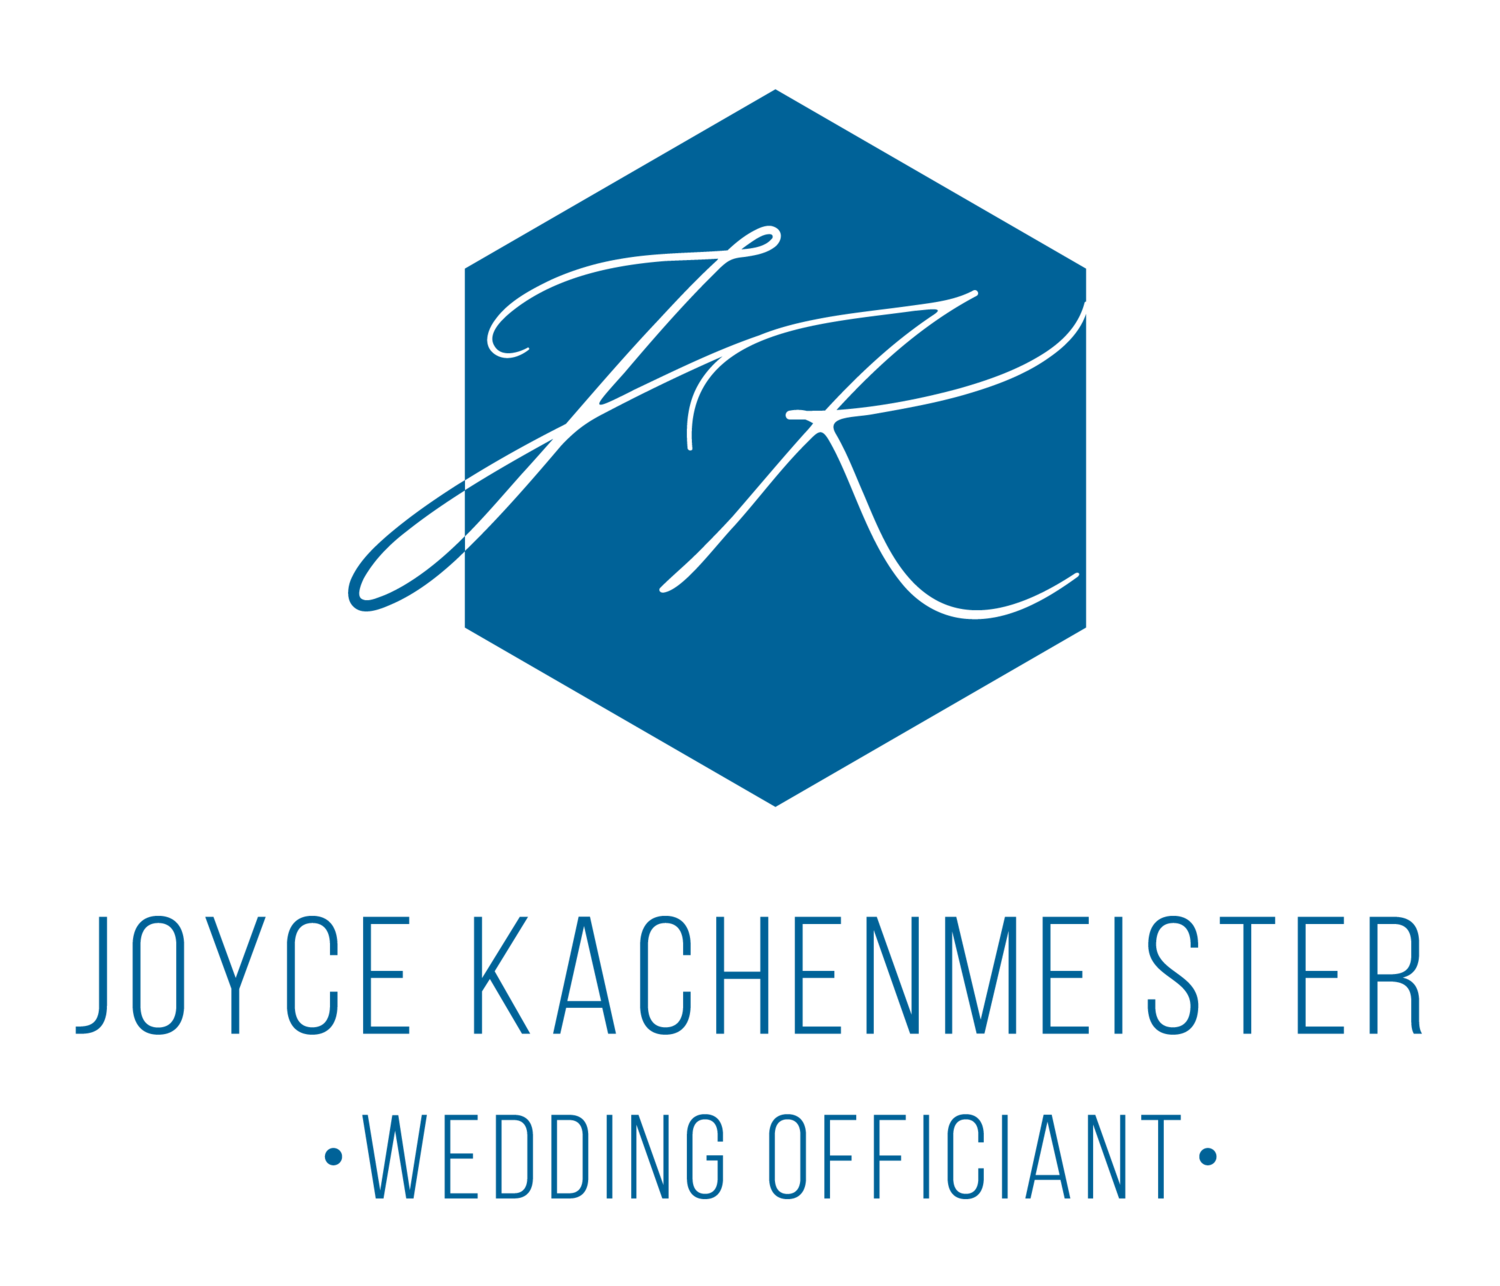 Joyce Kachenmeister